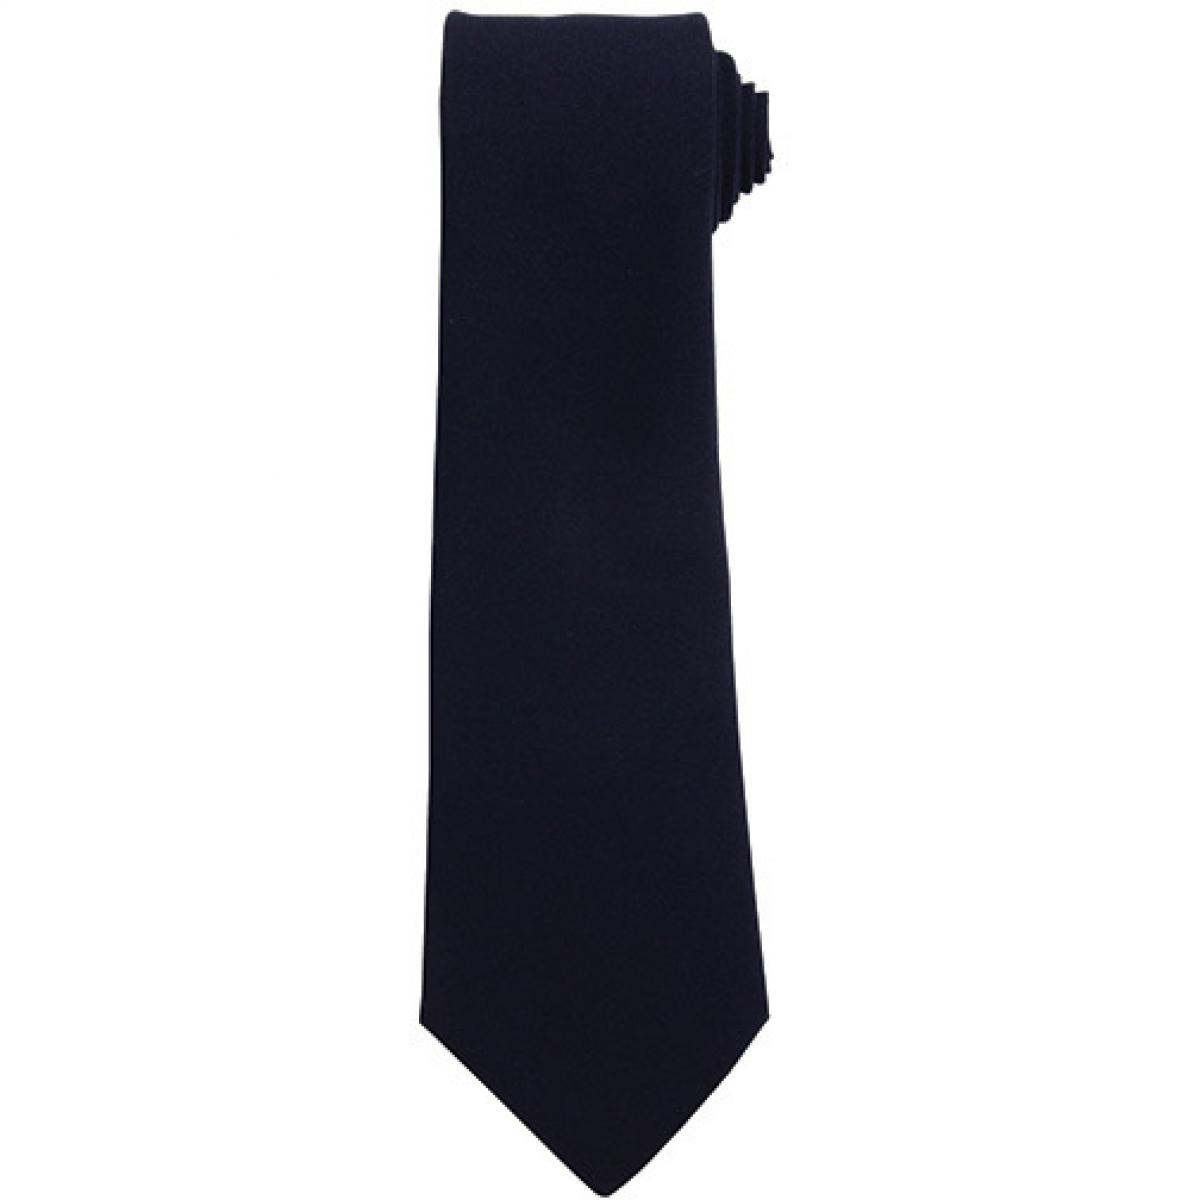 Hersteller: Premier Workwear Herstellernummer: PR700 Artikelbezeichnung: Work Tie Farbe: Navy (ca. Pantone 2766)